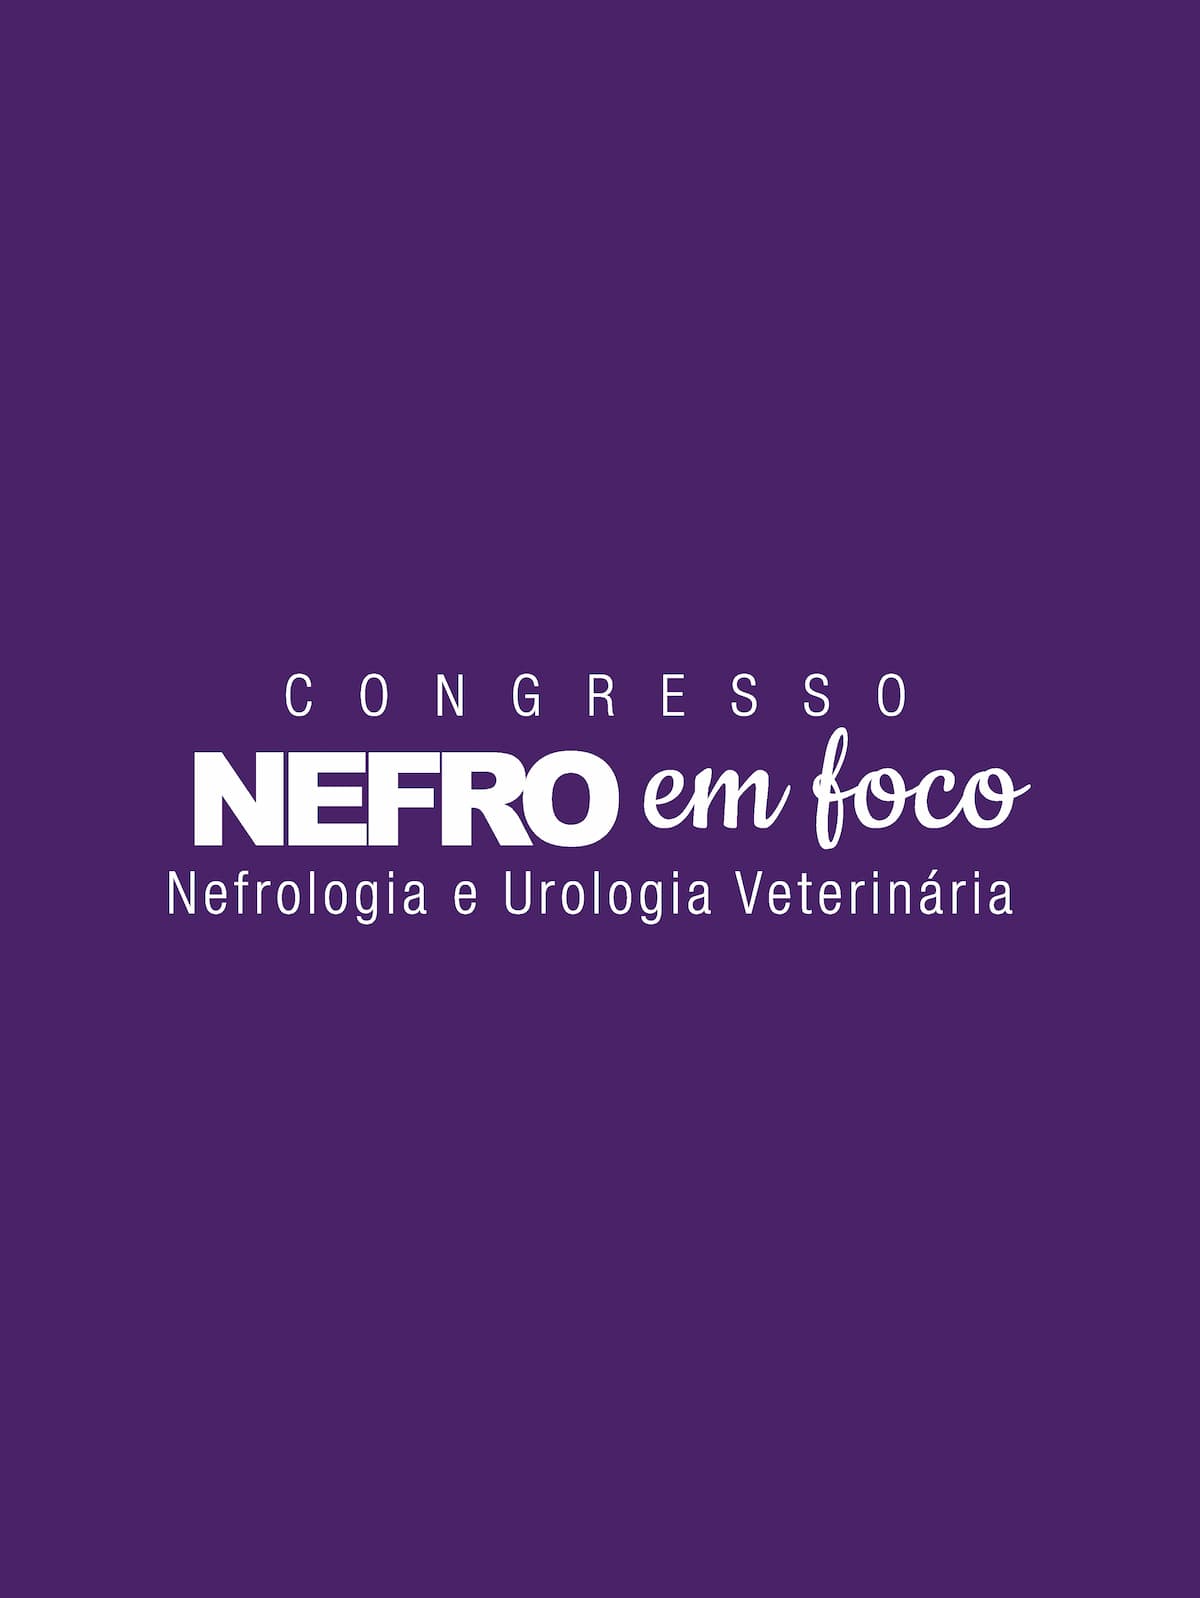 Congresso Nefro em Foco Estudantes entrada para três dias